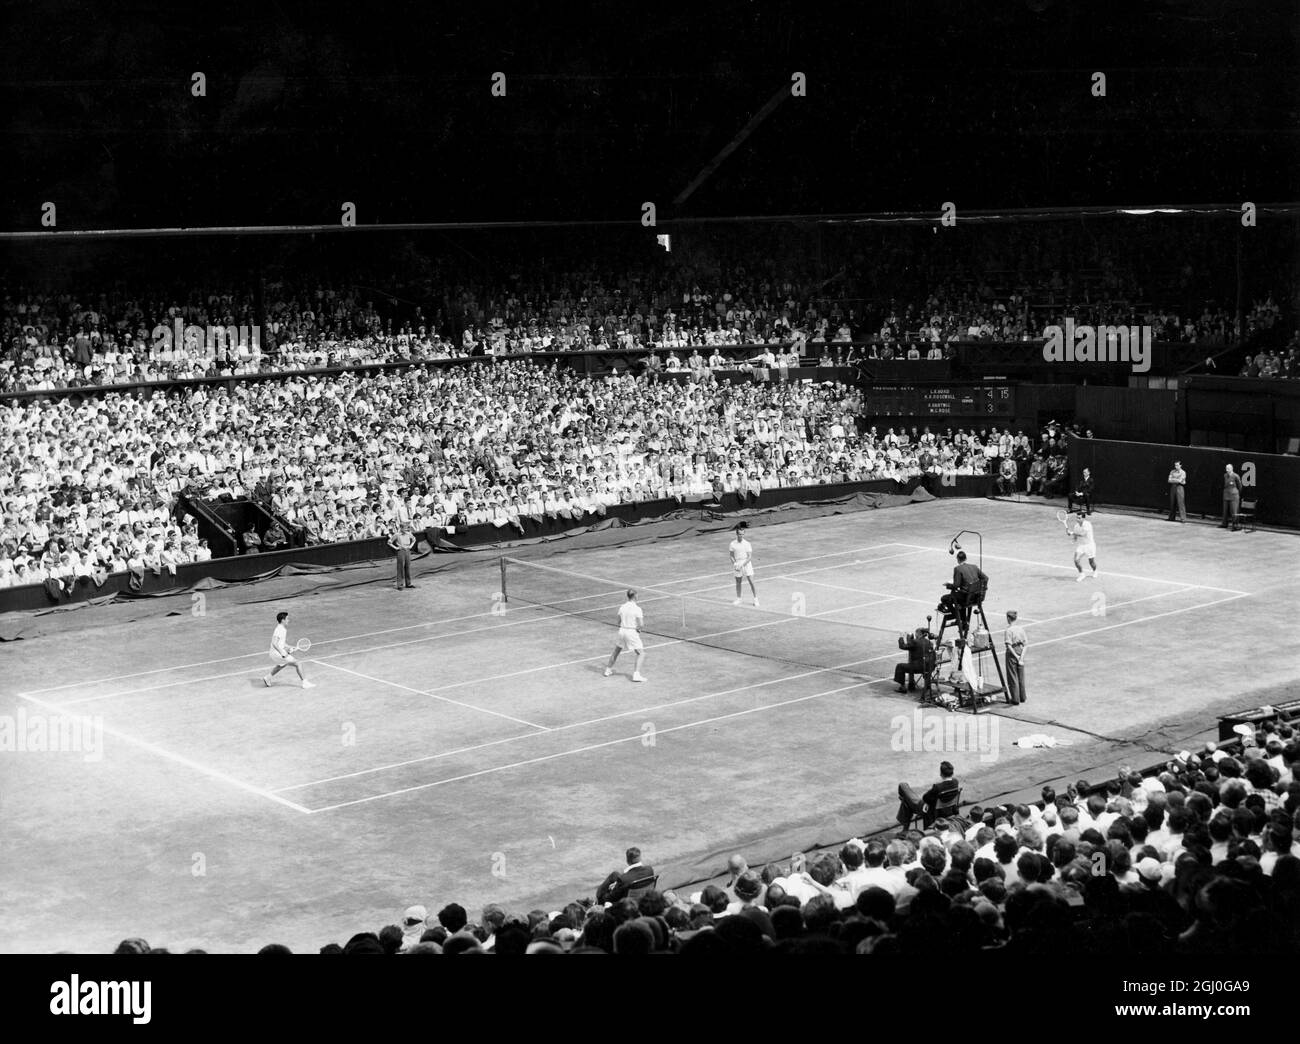 La finale des doubles hommes à Wimbledon. Une vue générale de la finale des doubles hommes à Wimbledon. Dans le tribunal le plus proche, la caméra est Rosewall et Hoad (à gauche) adn Hartwig et Rose. 4 juillet 1953 Banque D'Images